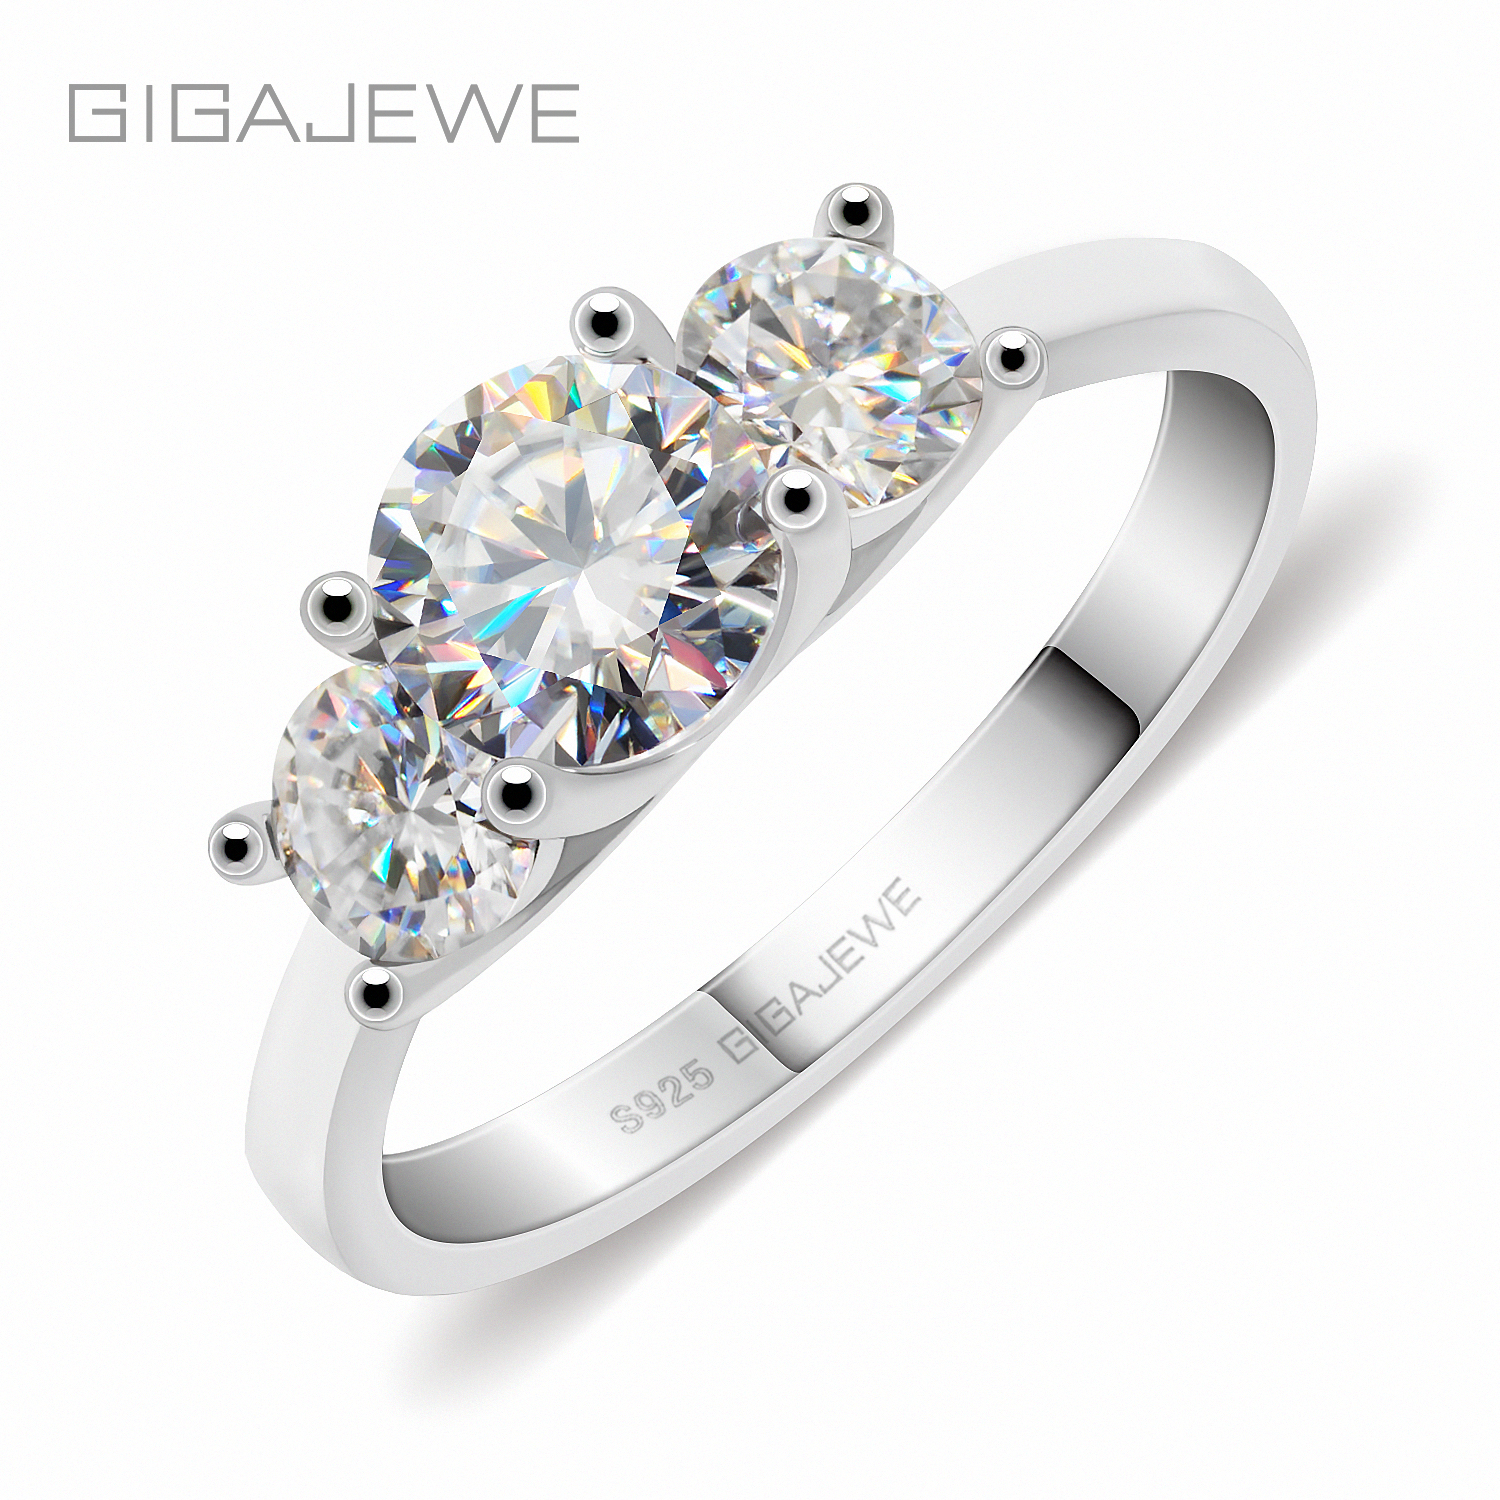 GIGAJEWE 莫桑钻 1.2ct 5.5mm+2X4.0mm 圆形切工EF色925银戒指镀金多层女女友礼物